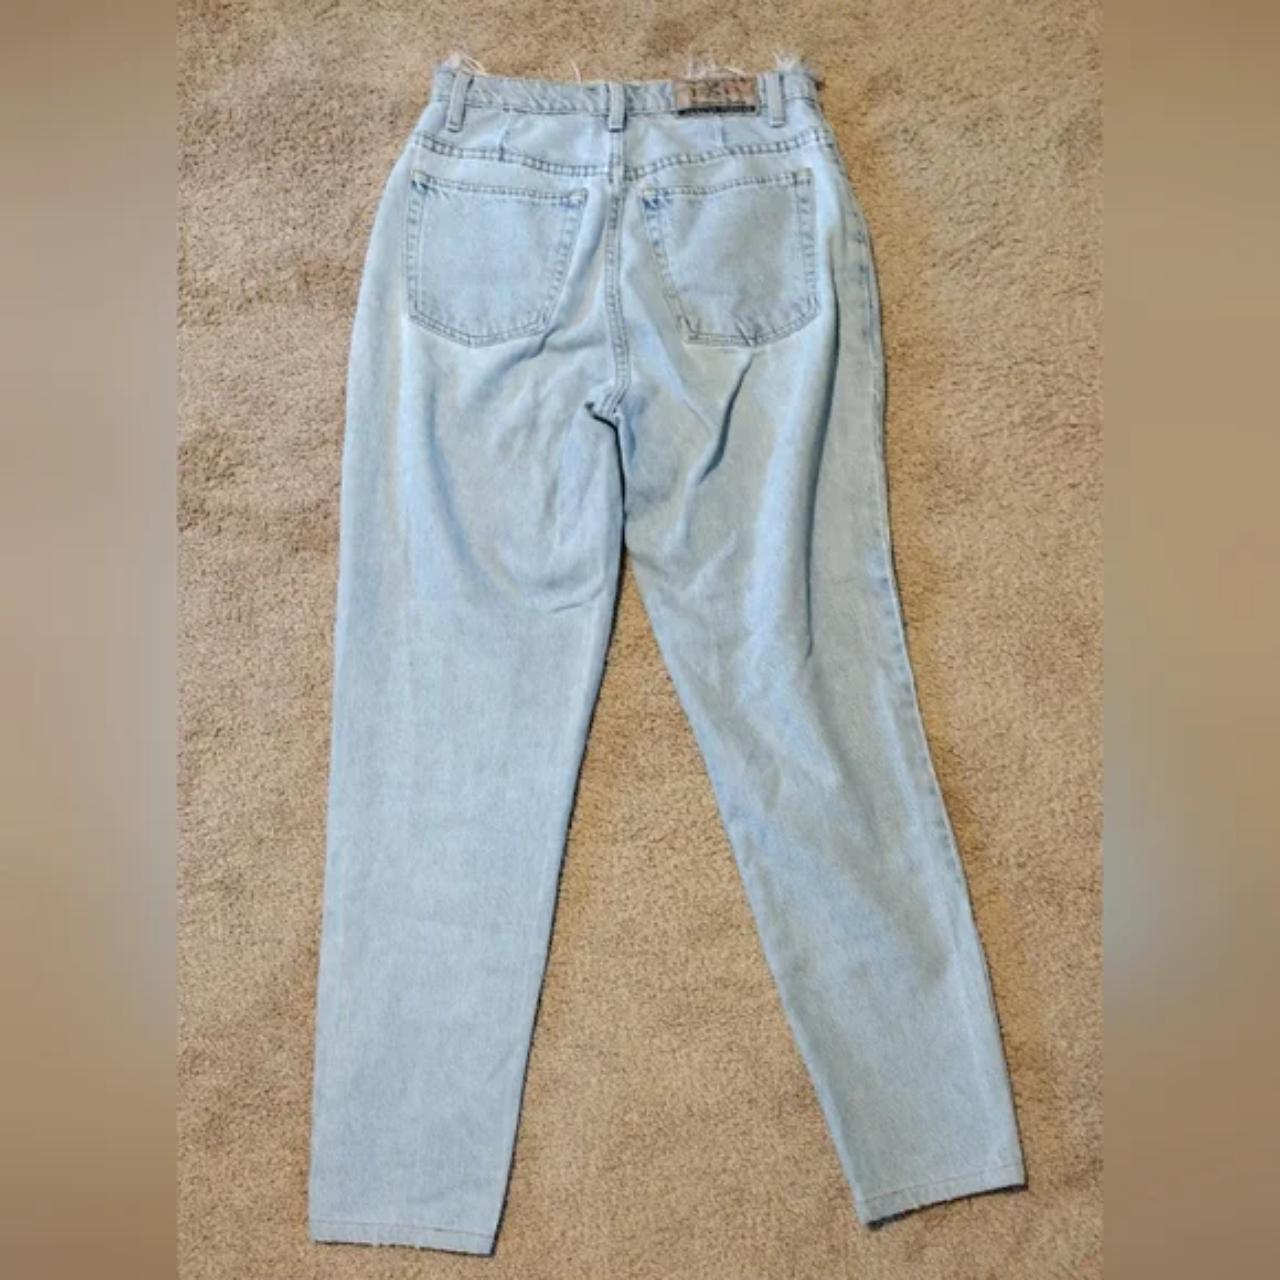 Vintage 90s Jeans by Express Frayed Waist High Waist... - Depop